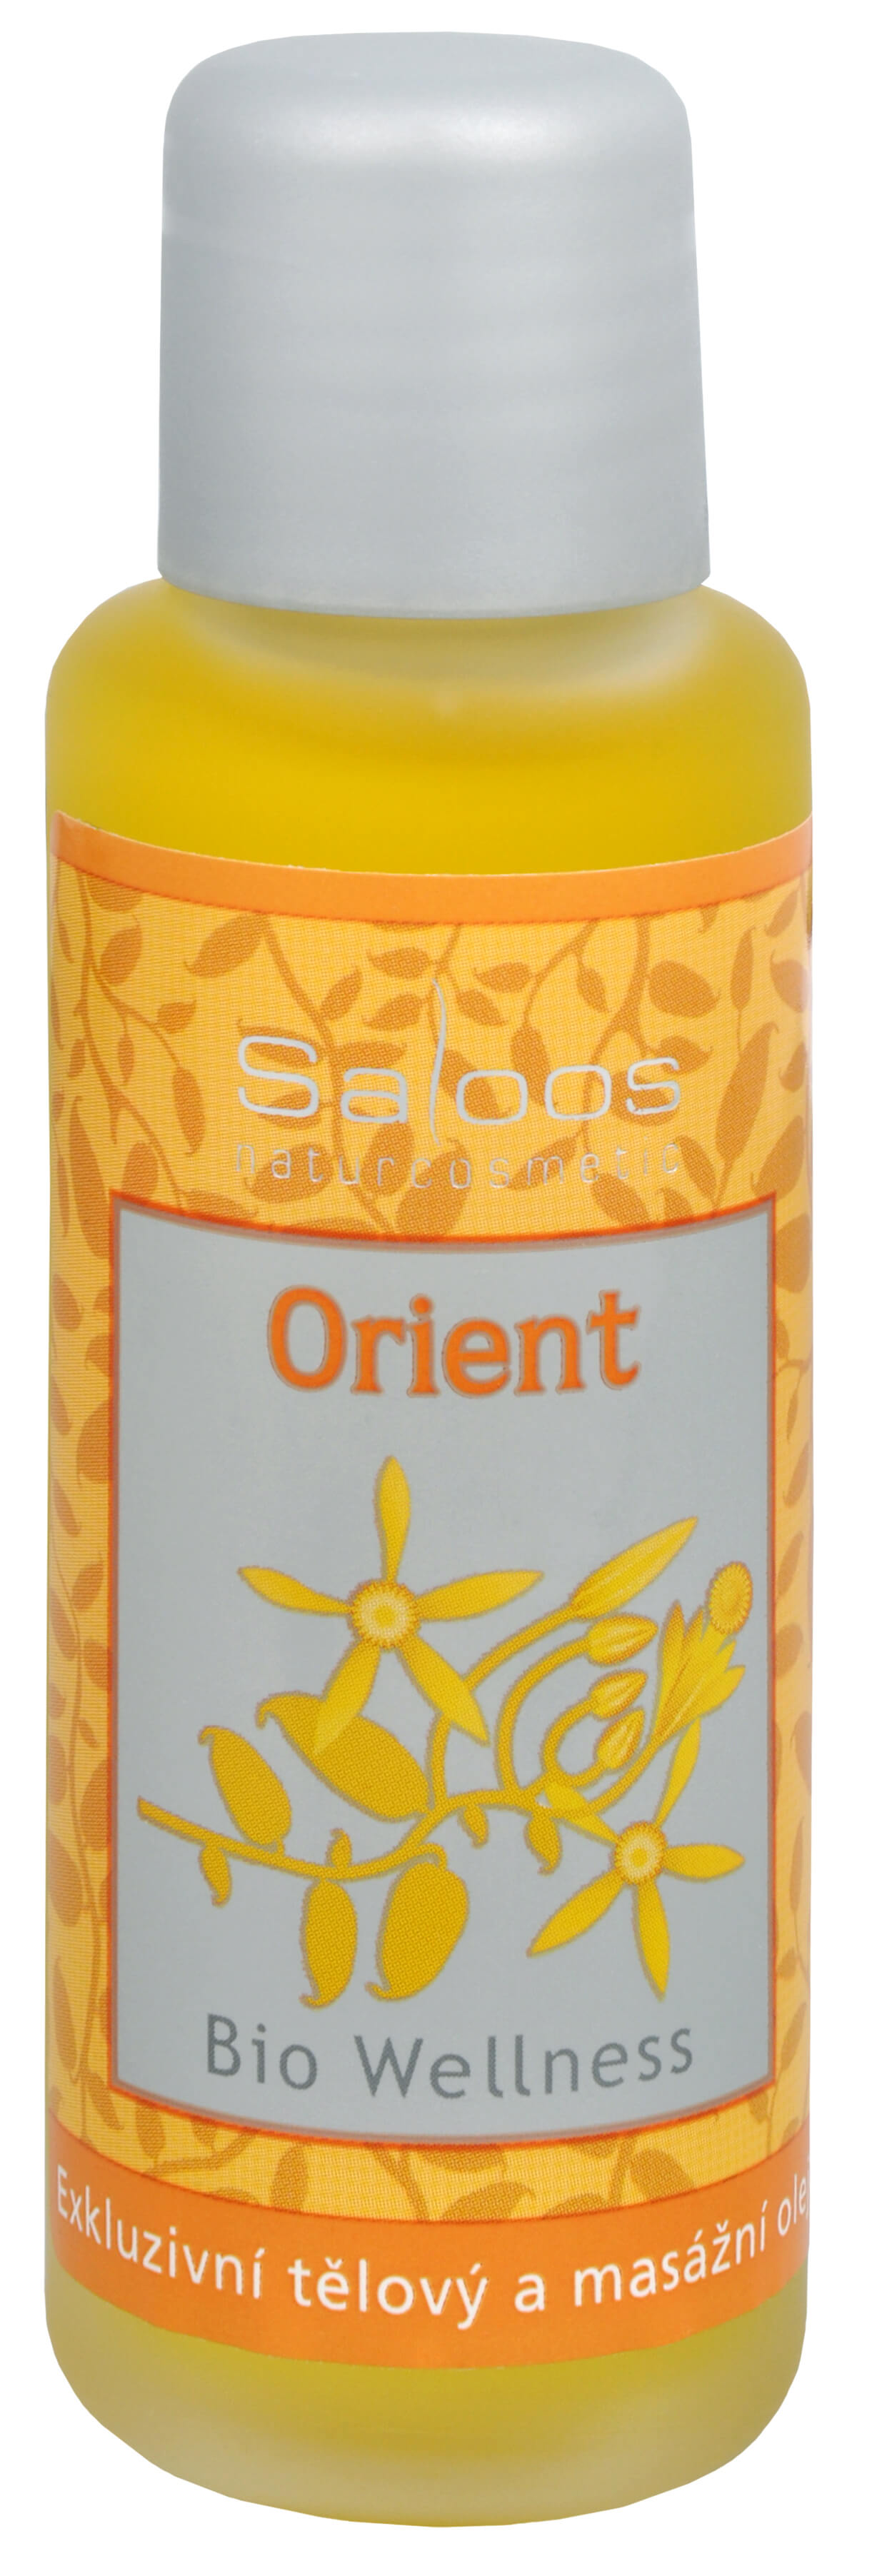 Zobrazit detail výrobku Saloos Bio Wellness exkluzivní tělový a masážní olej - Orient 50 ml + 2 měsíce na vrácení zboží